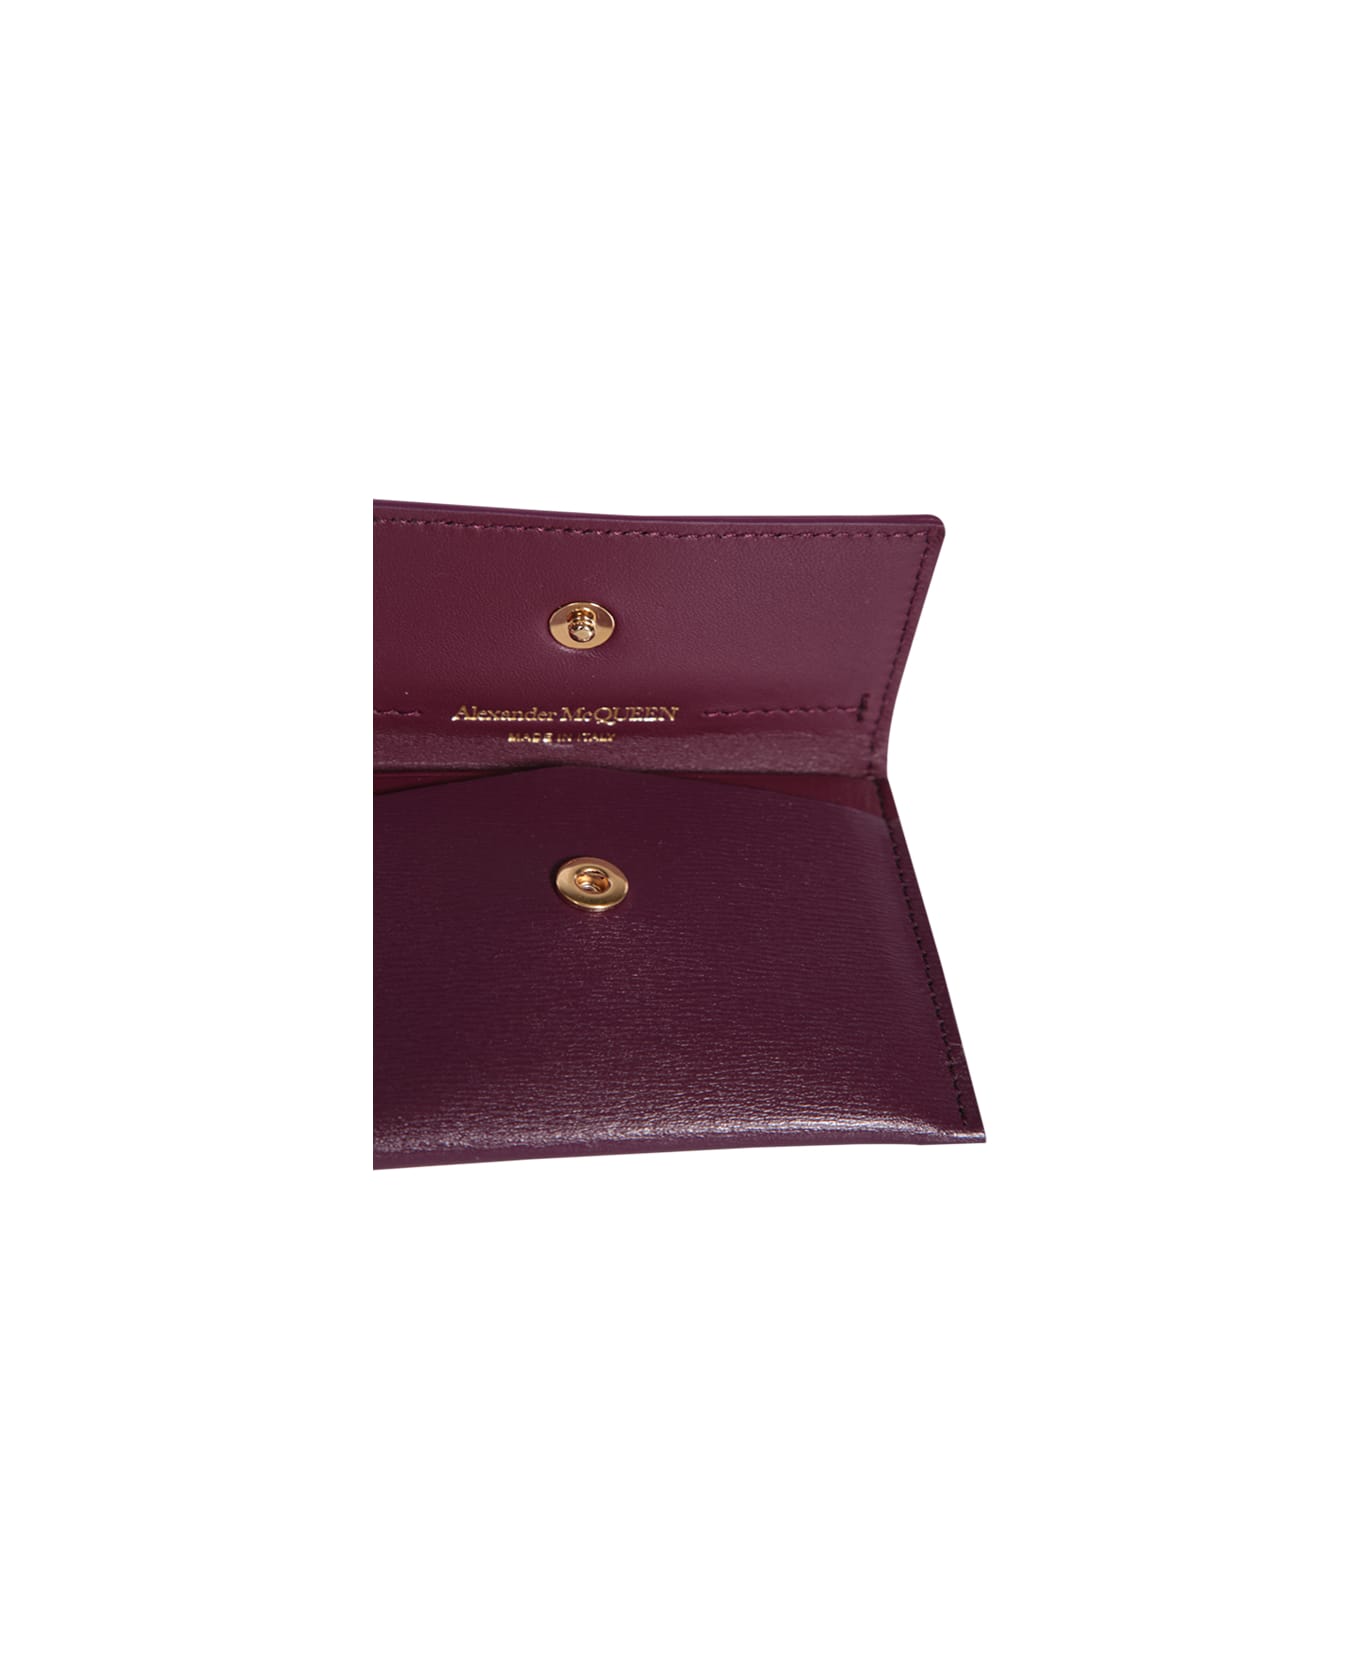 Alexander McQueen Envelope Bordeaux Cardholder - Bordeaux 財布